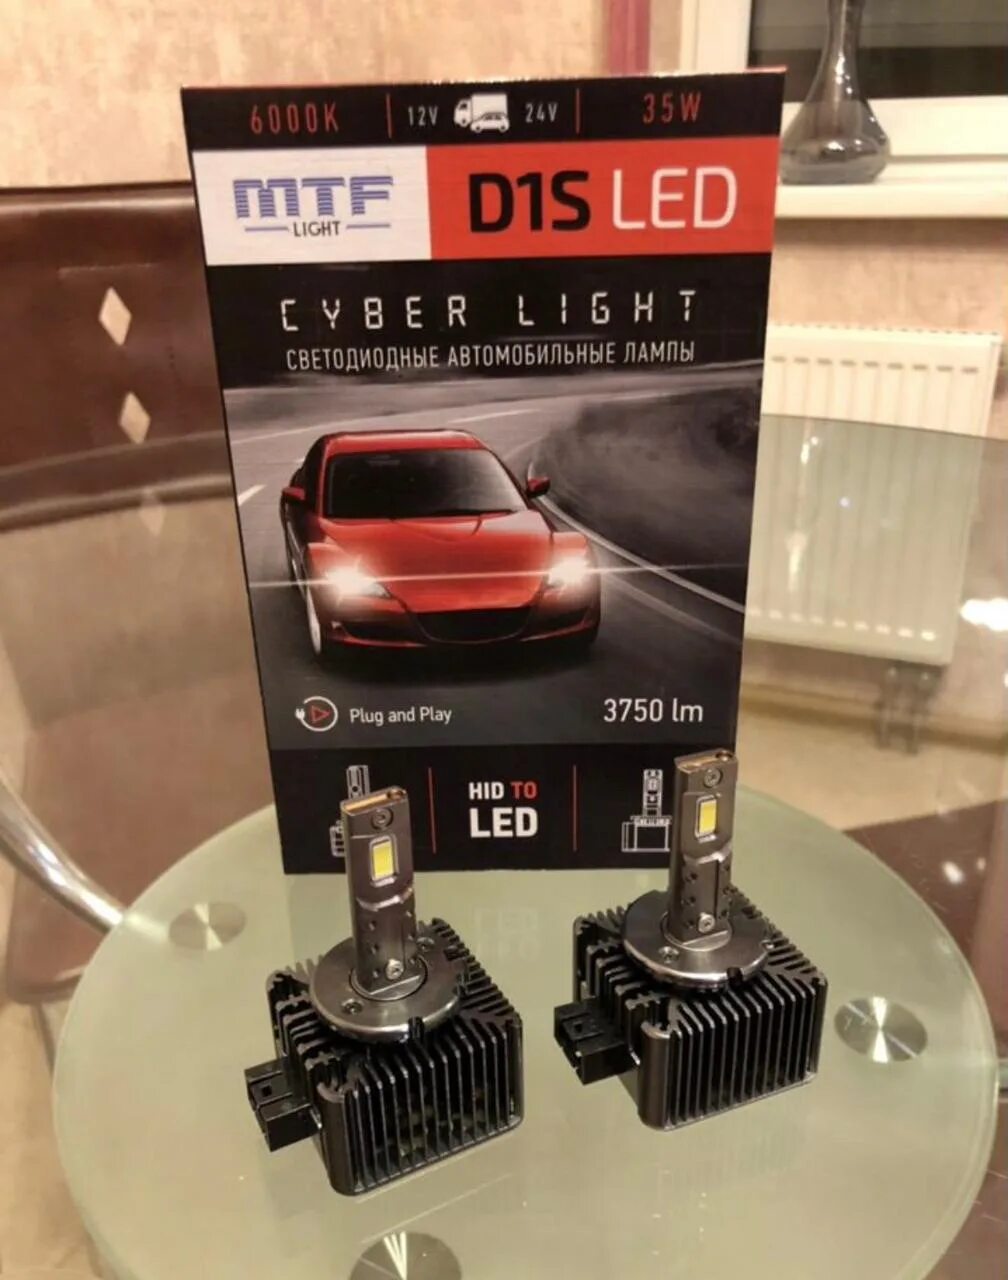 Светодиодные лампы MTF d3s Cyber Light 6000к. Автомобильные светодиодные лампы MTF d1s. Светодиодные лампы MTF d2s/d4s Cyber Light Pro.